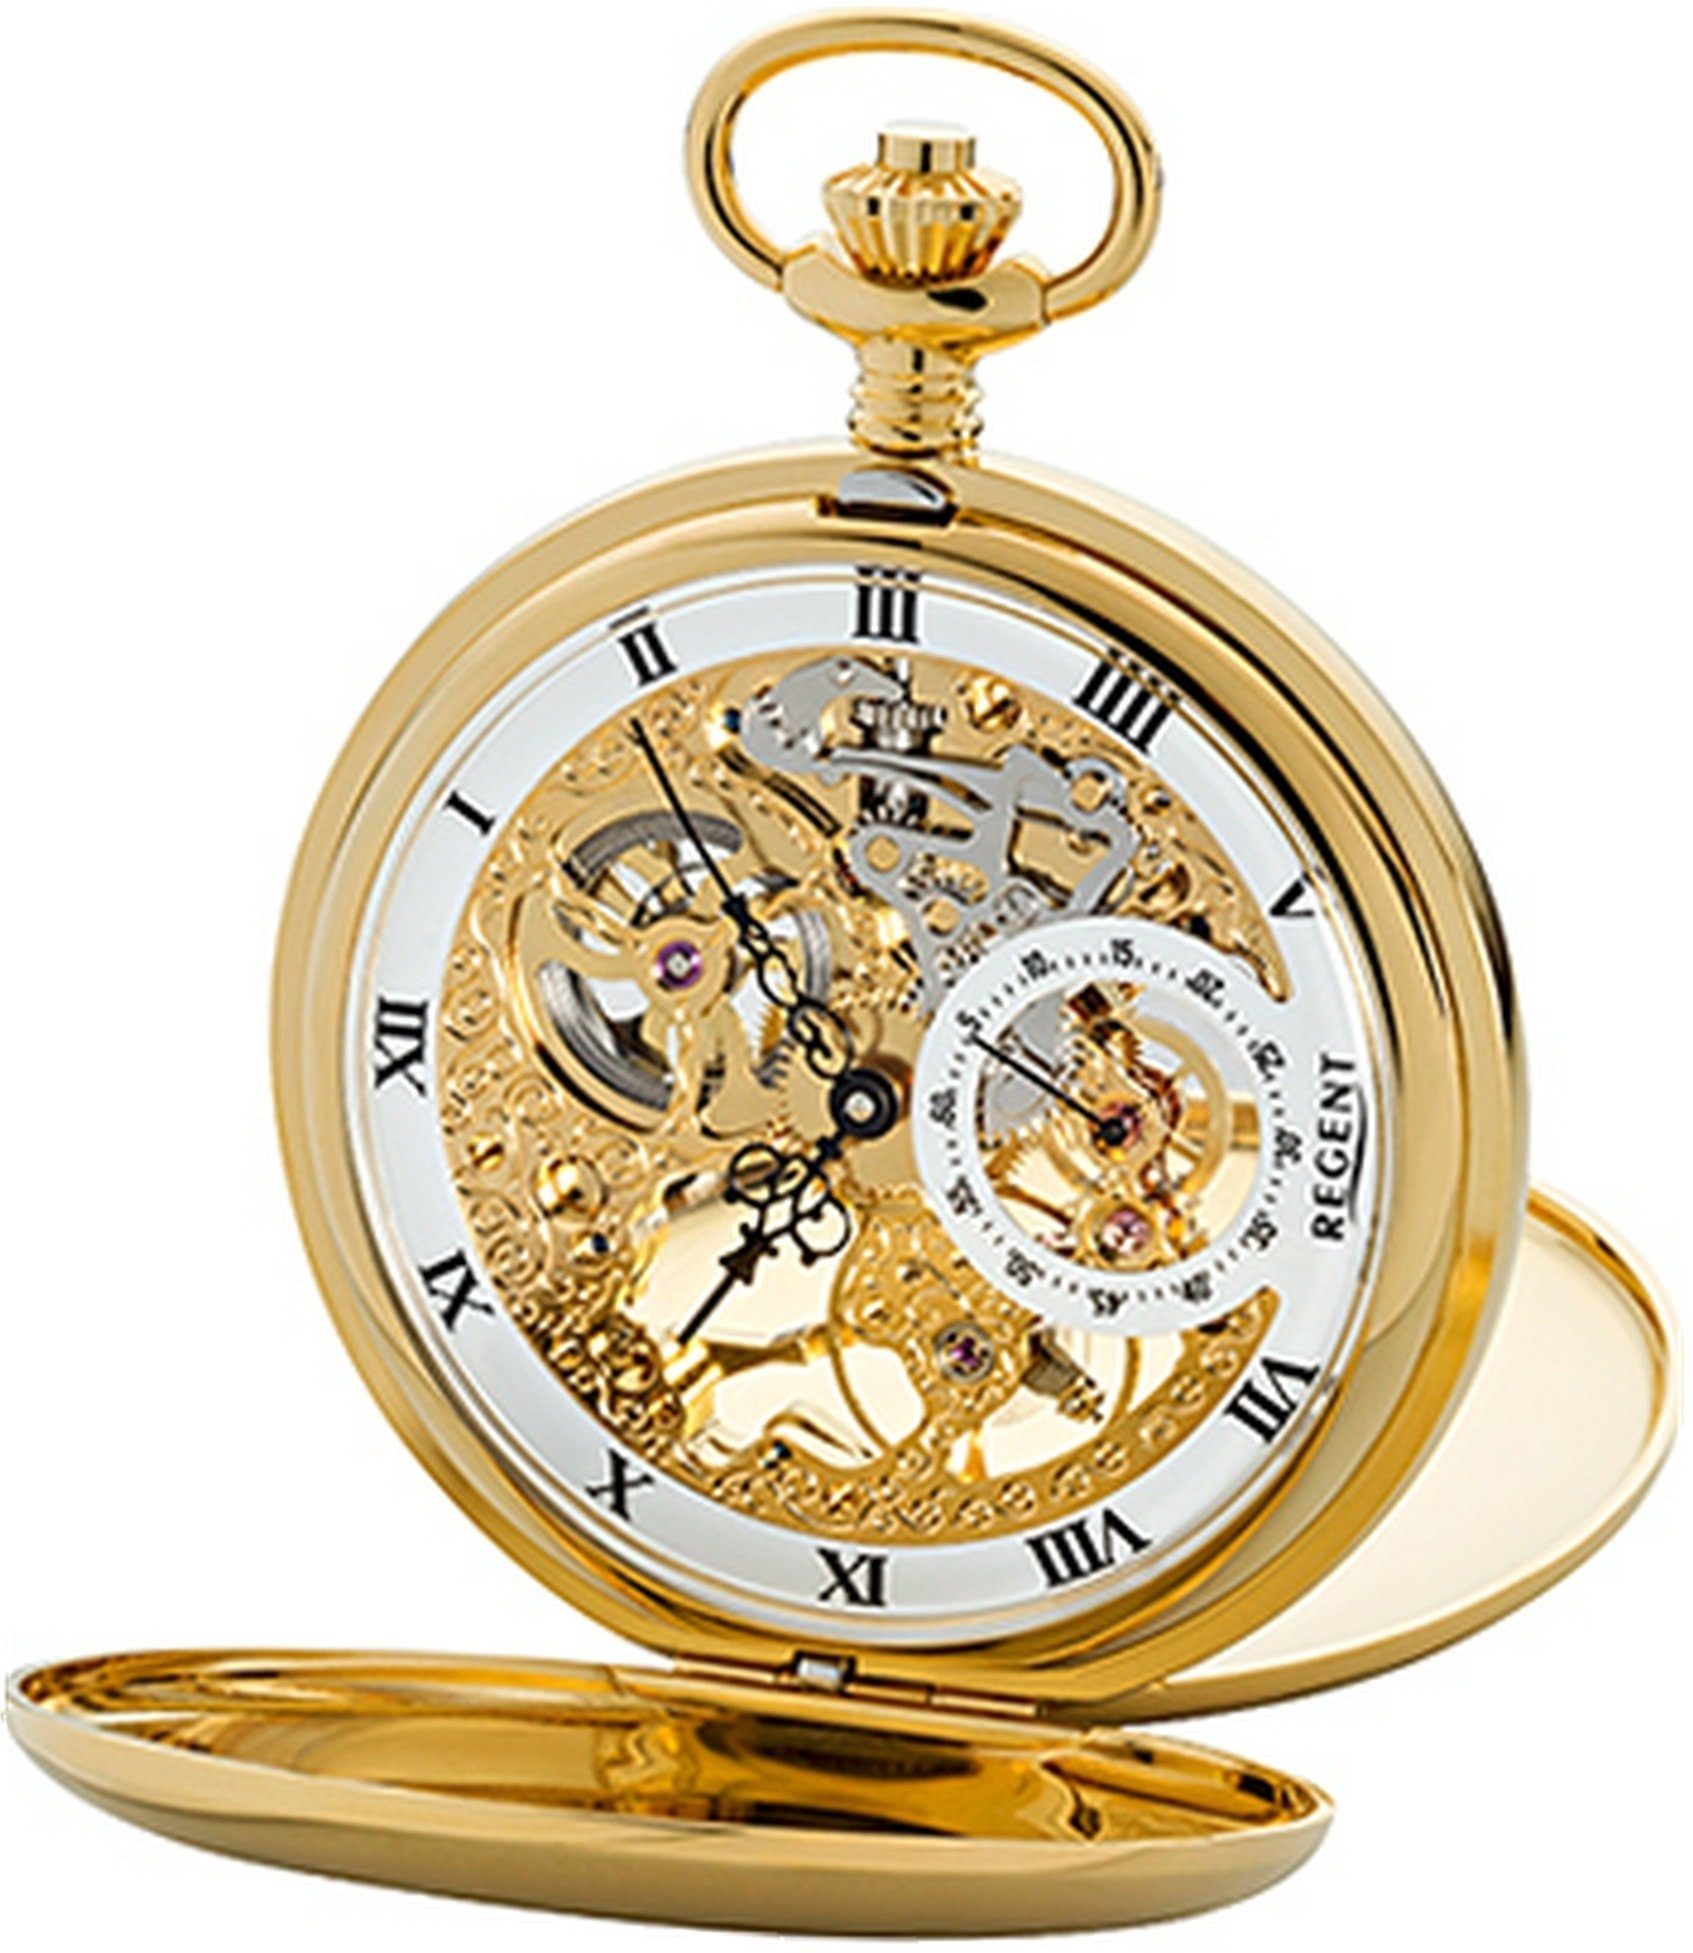 (ca. Regent rundes Gehäuse, Herren weiß Taschenuhr Regent groß (Analoguhr), 53mm), Herrenuhr, Uhr Armbanduhr, GM1612